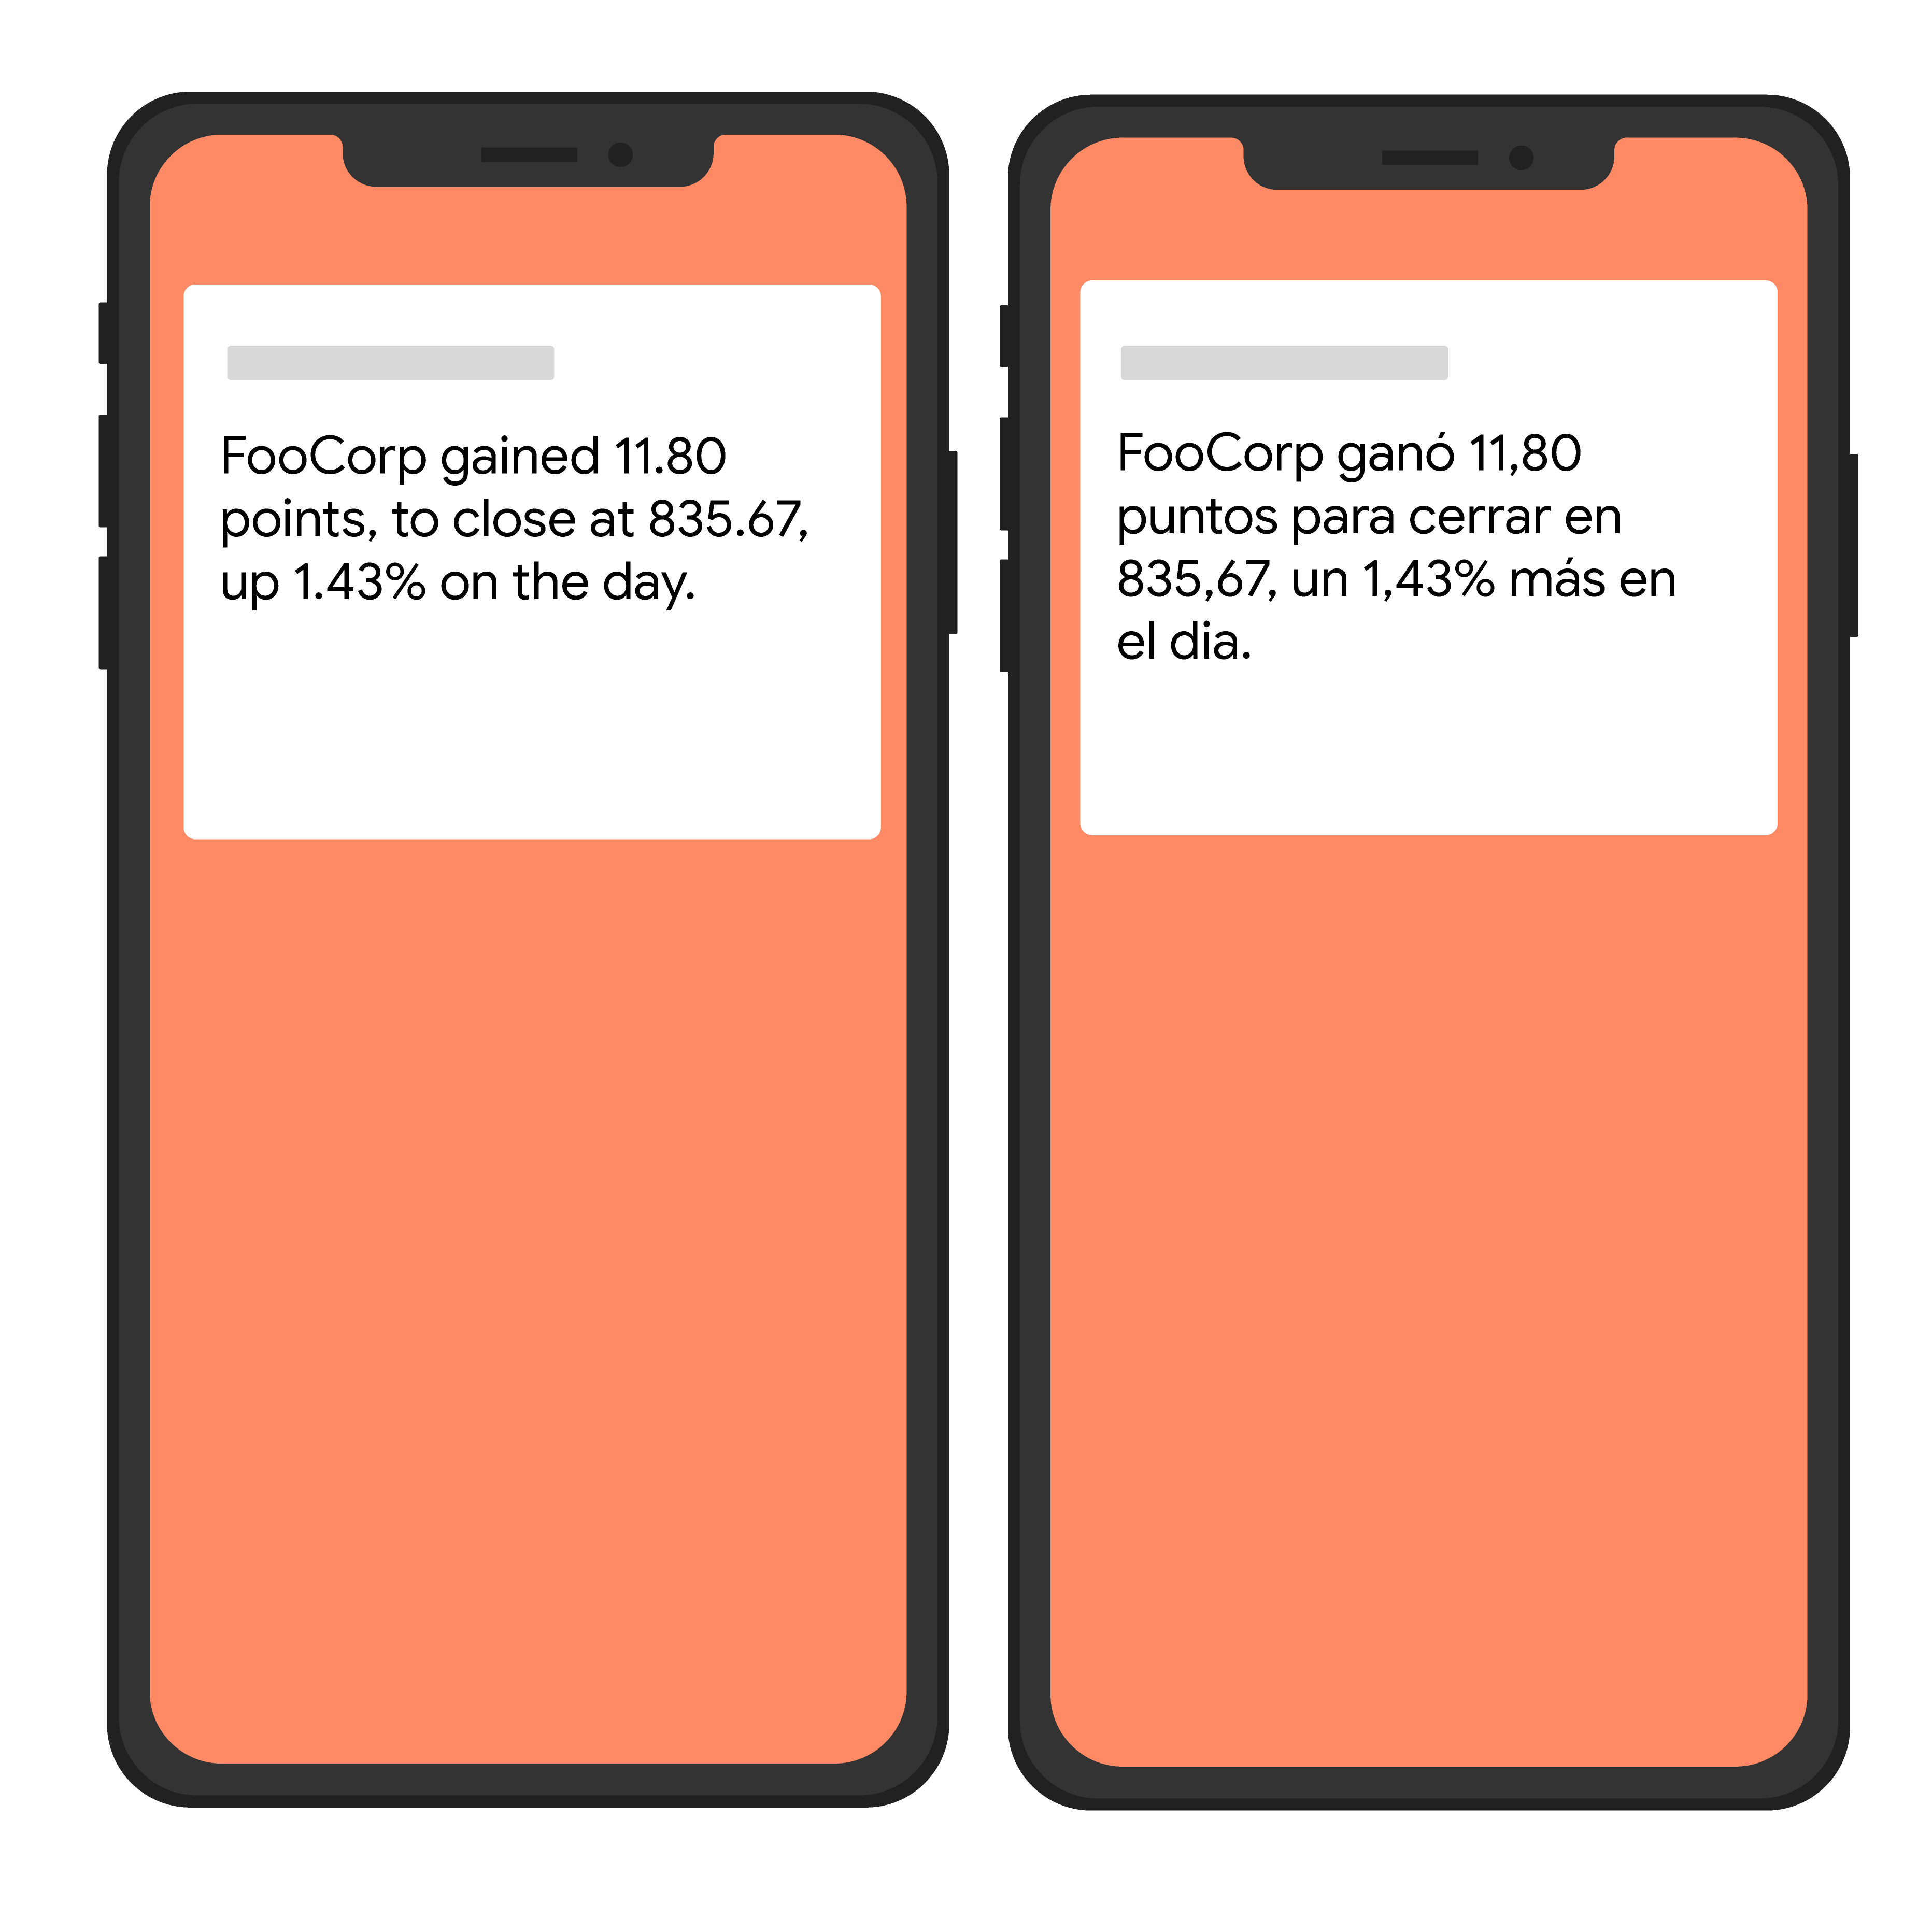 Gambar sederhana dua perangkat yang menampilkan teks dalam bahasa Inggris dan Spanyol